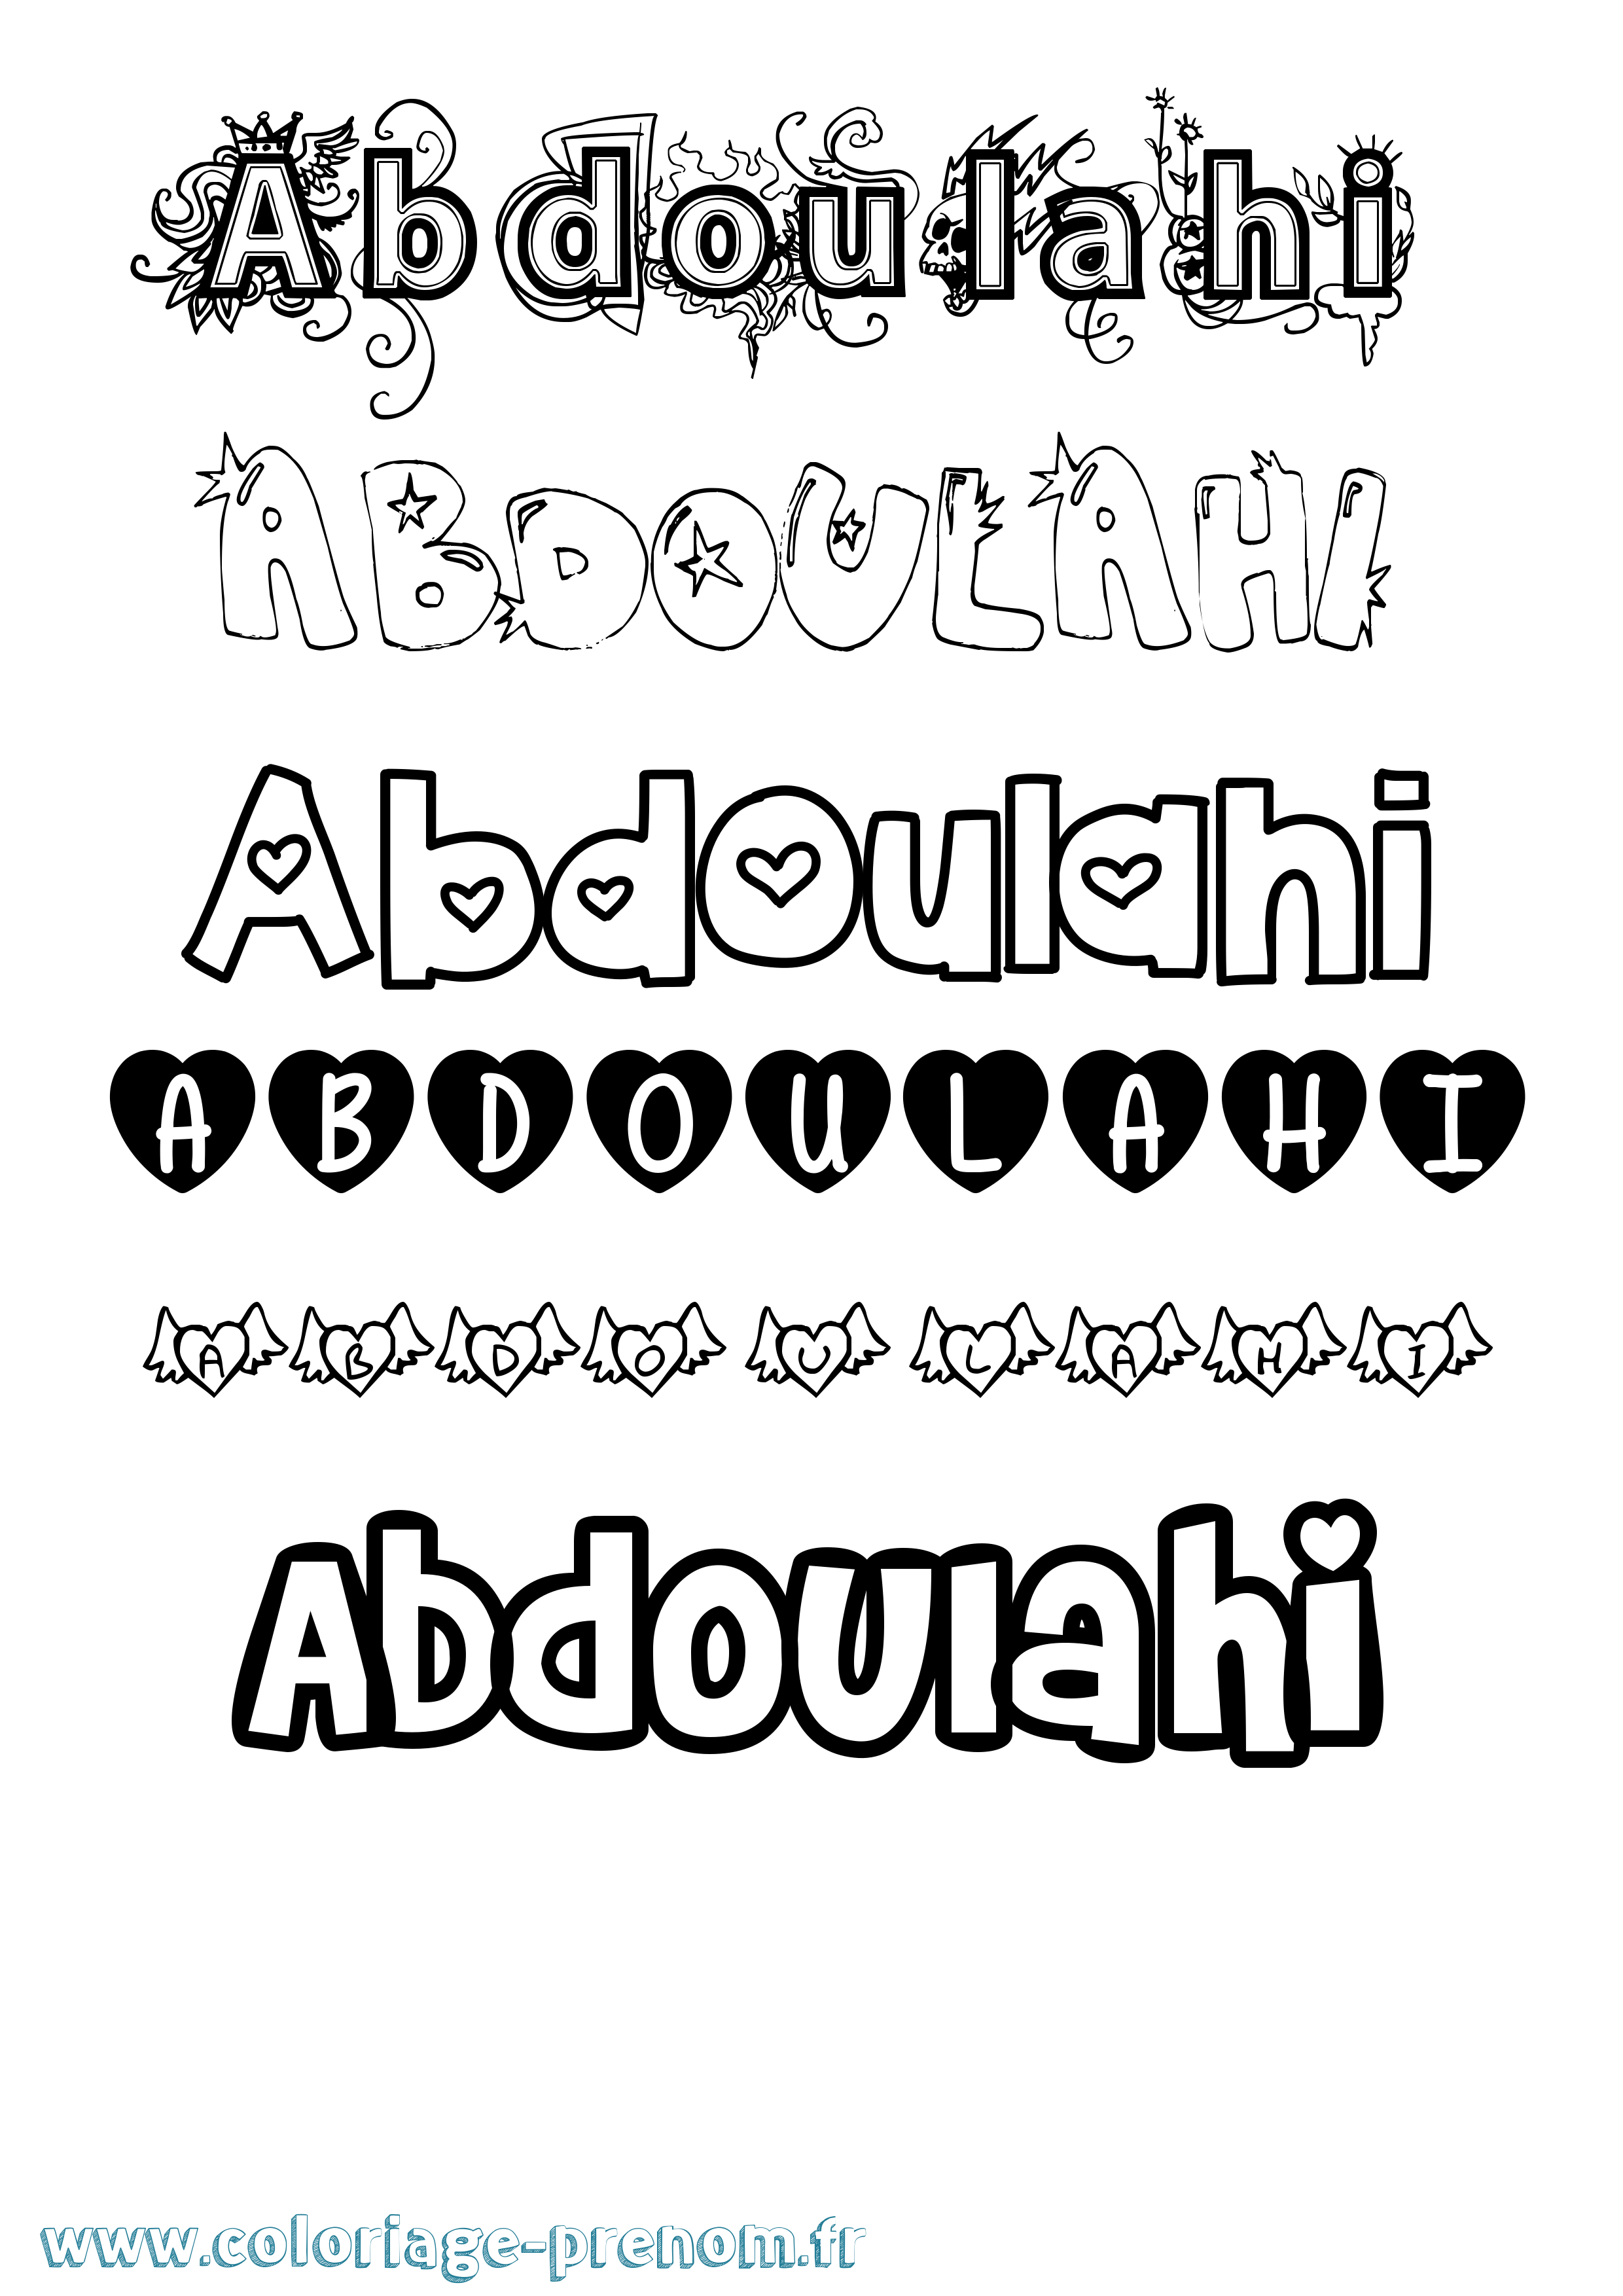 Coloriage prénom Abdoulahi Girly